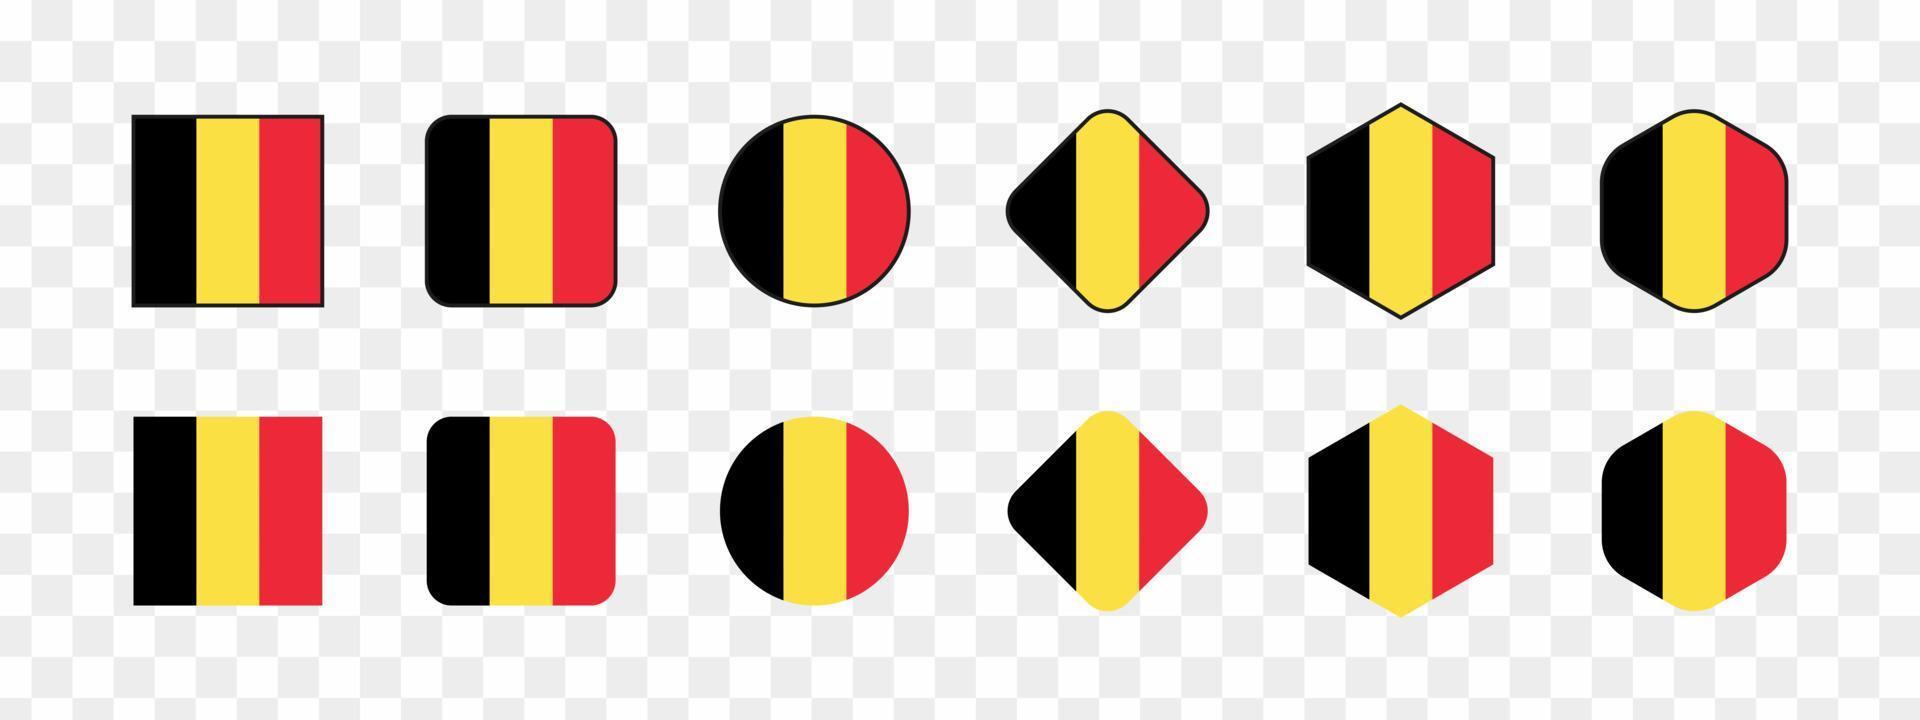 Vector Belgium flag, Belgium flag illustration, Belgium flag picture, Belgium flag image, vector illustration